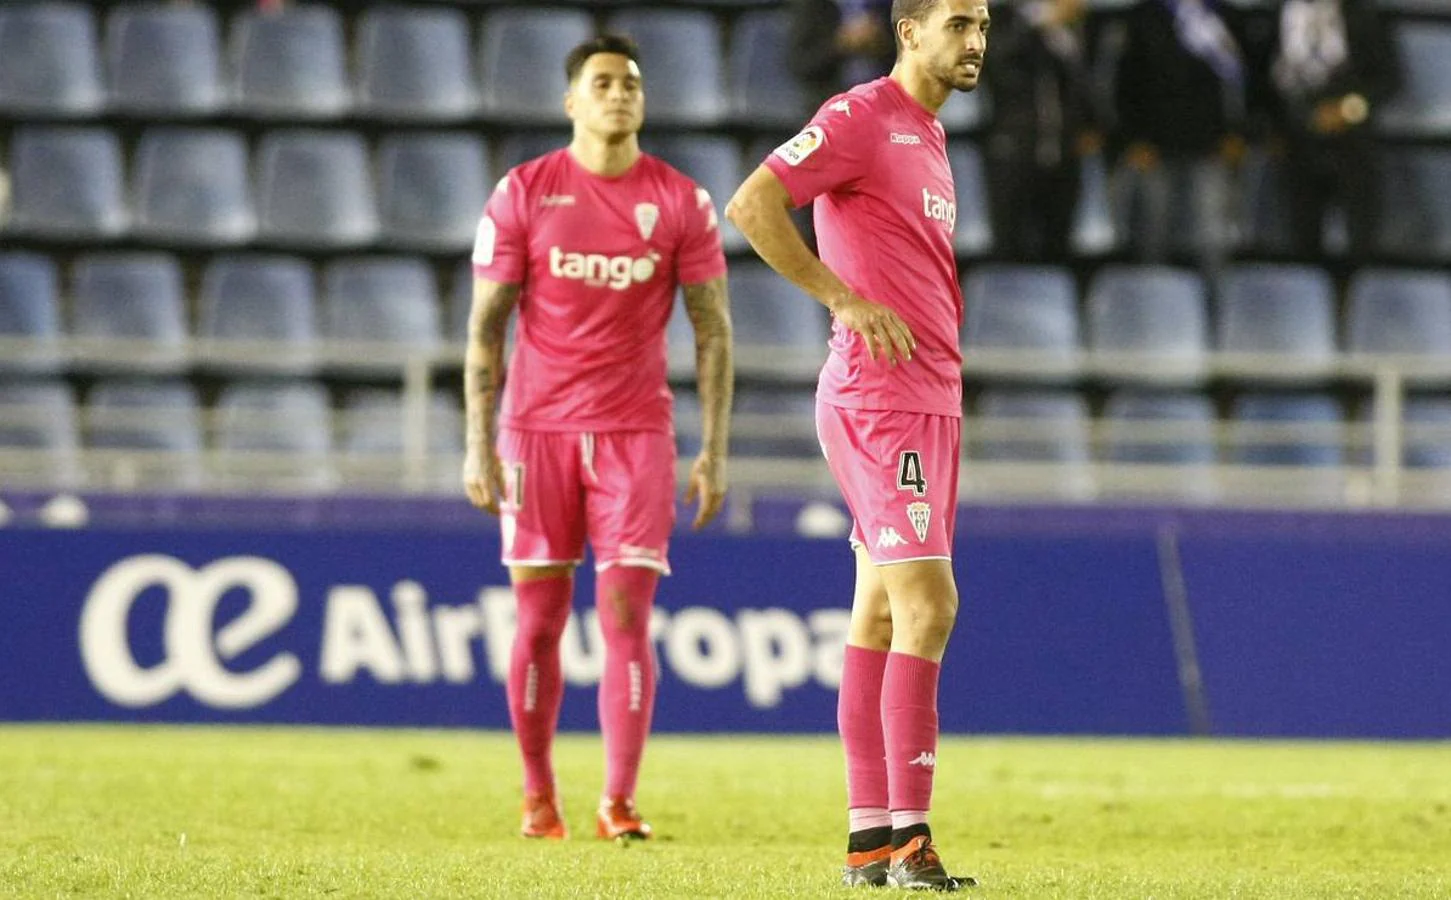 Al Córdoba CF se le agotan los argumentos tras salir goleado de Tenerife (5-1)